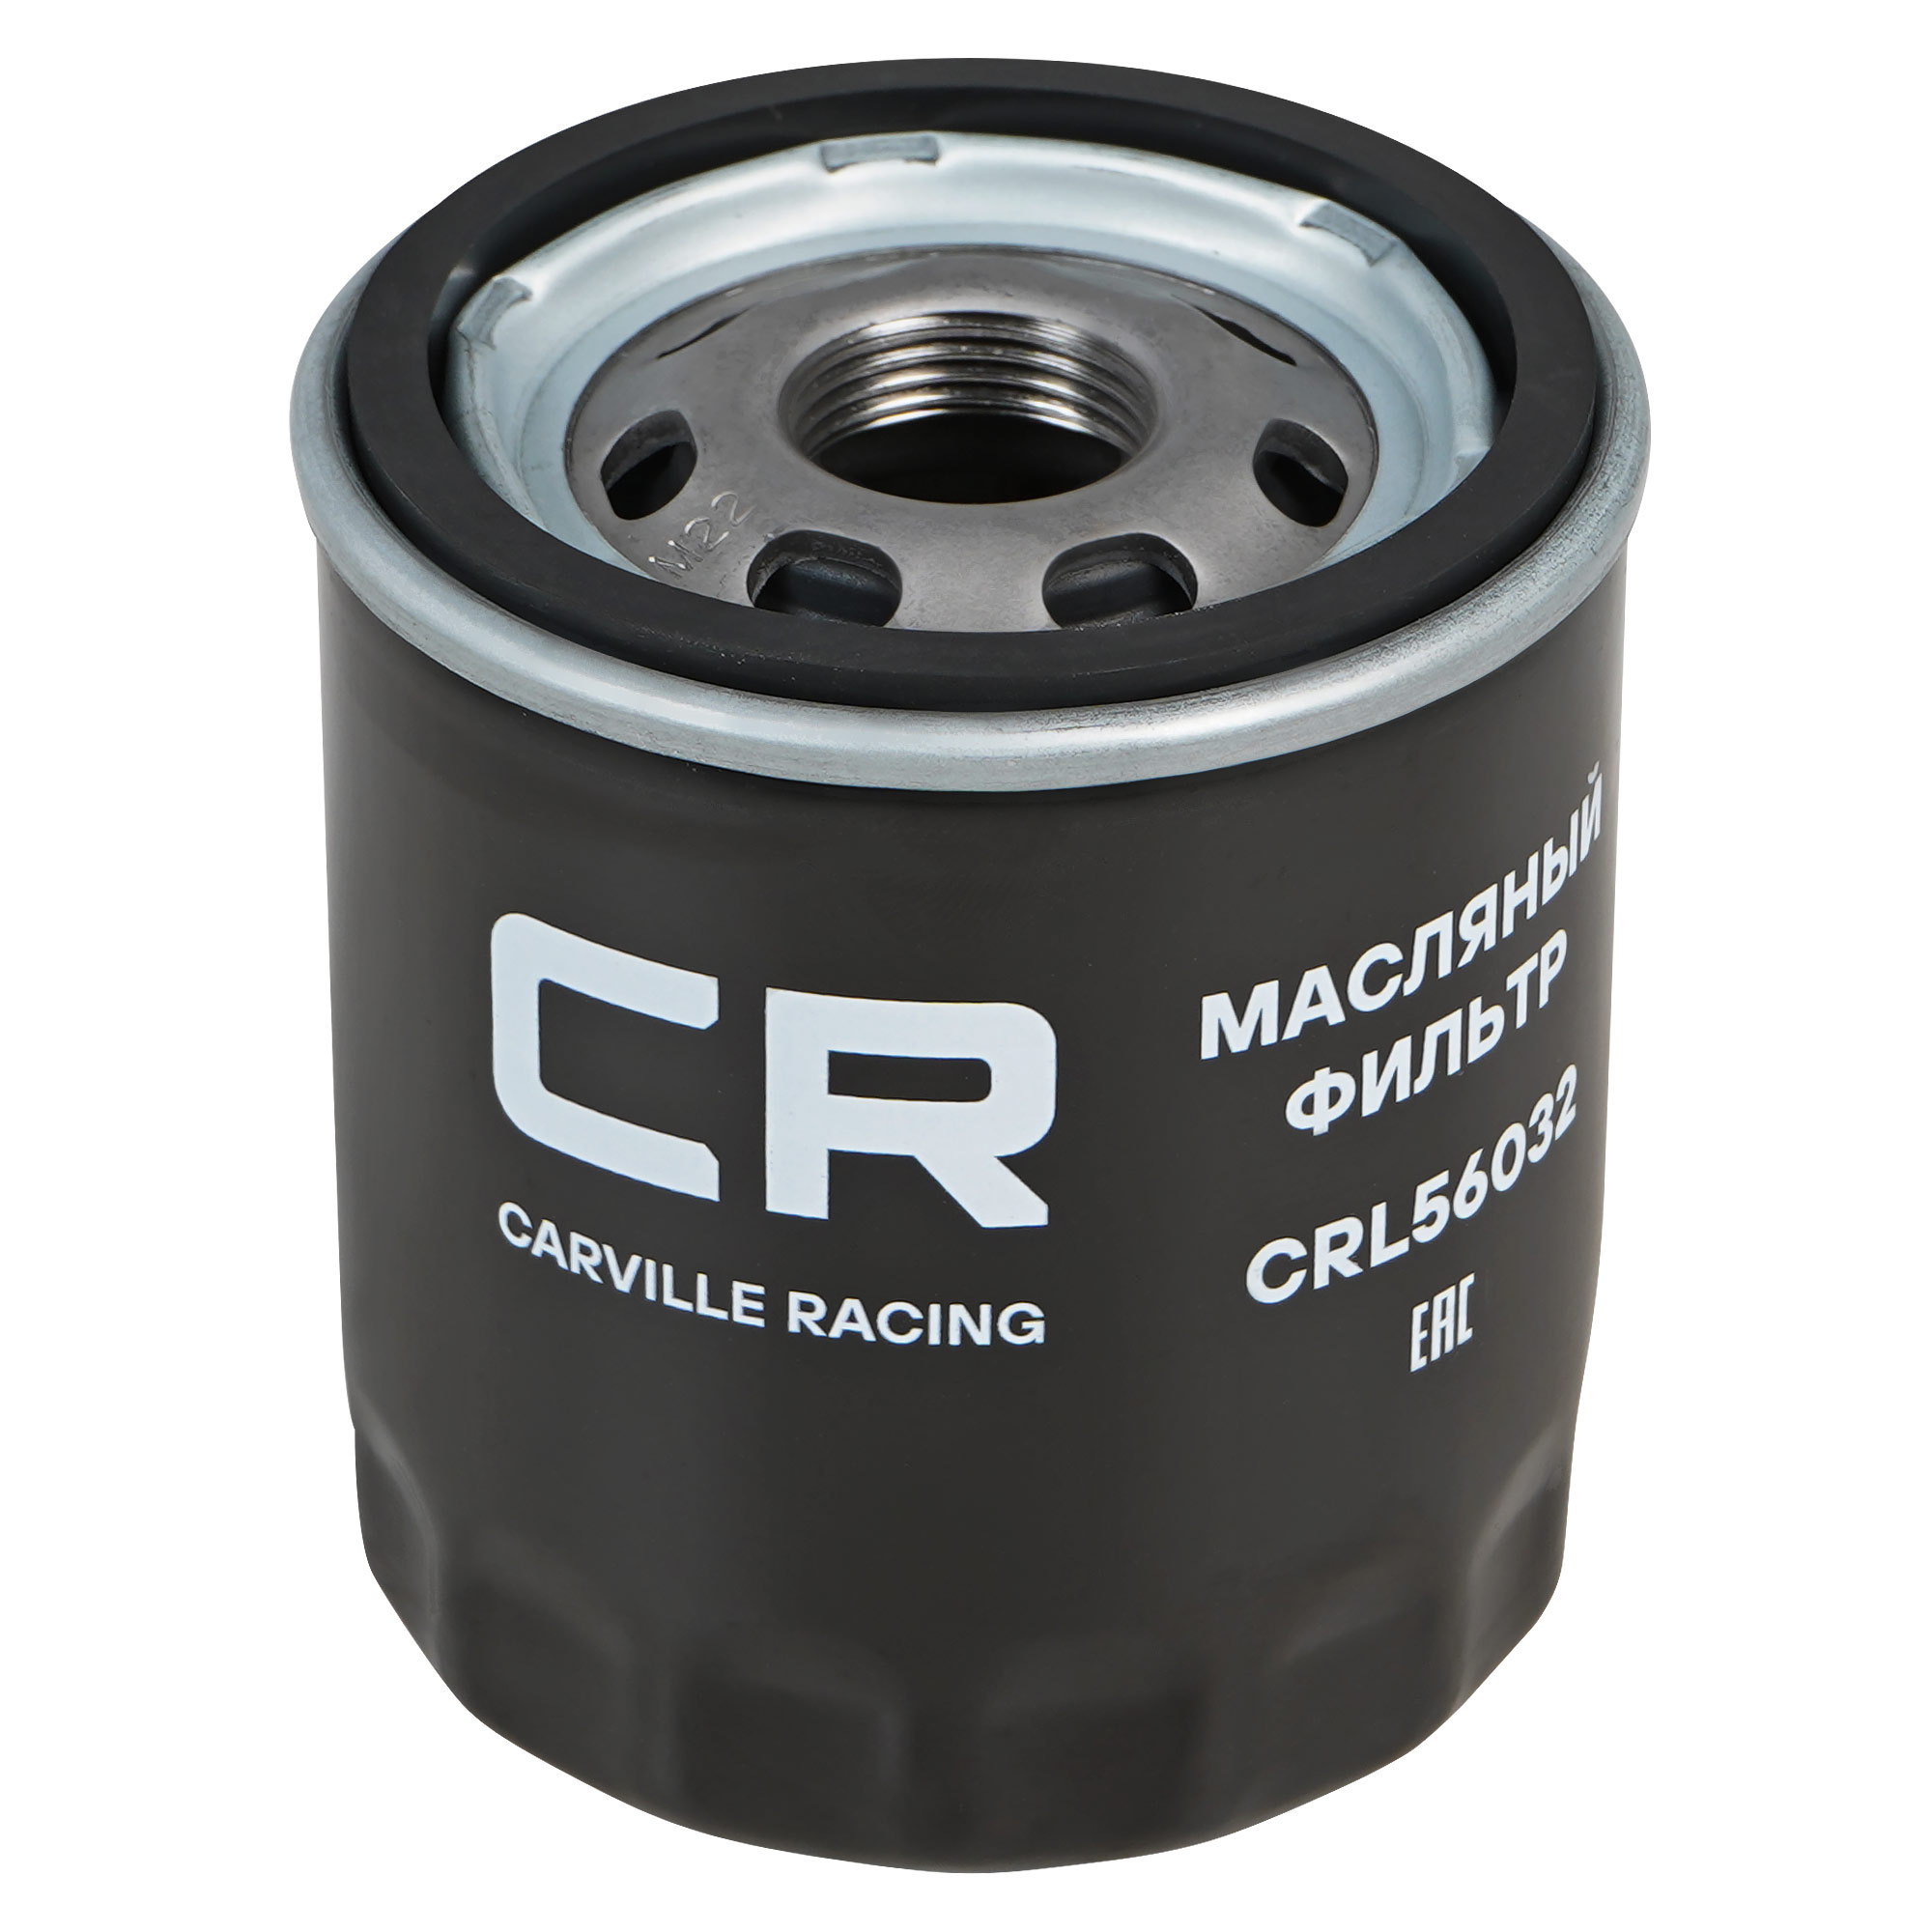 CARVILLE RACING CRL56032 Фильтр для а/м ford explorer(14 ) 3.5i/gm caliber(06 ) 2.0i/escalade(14 ) 6.2i (масл.) (crl56032) купить в Самаре